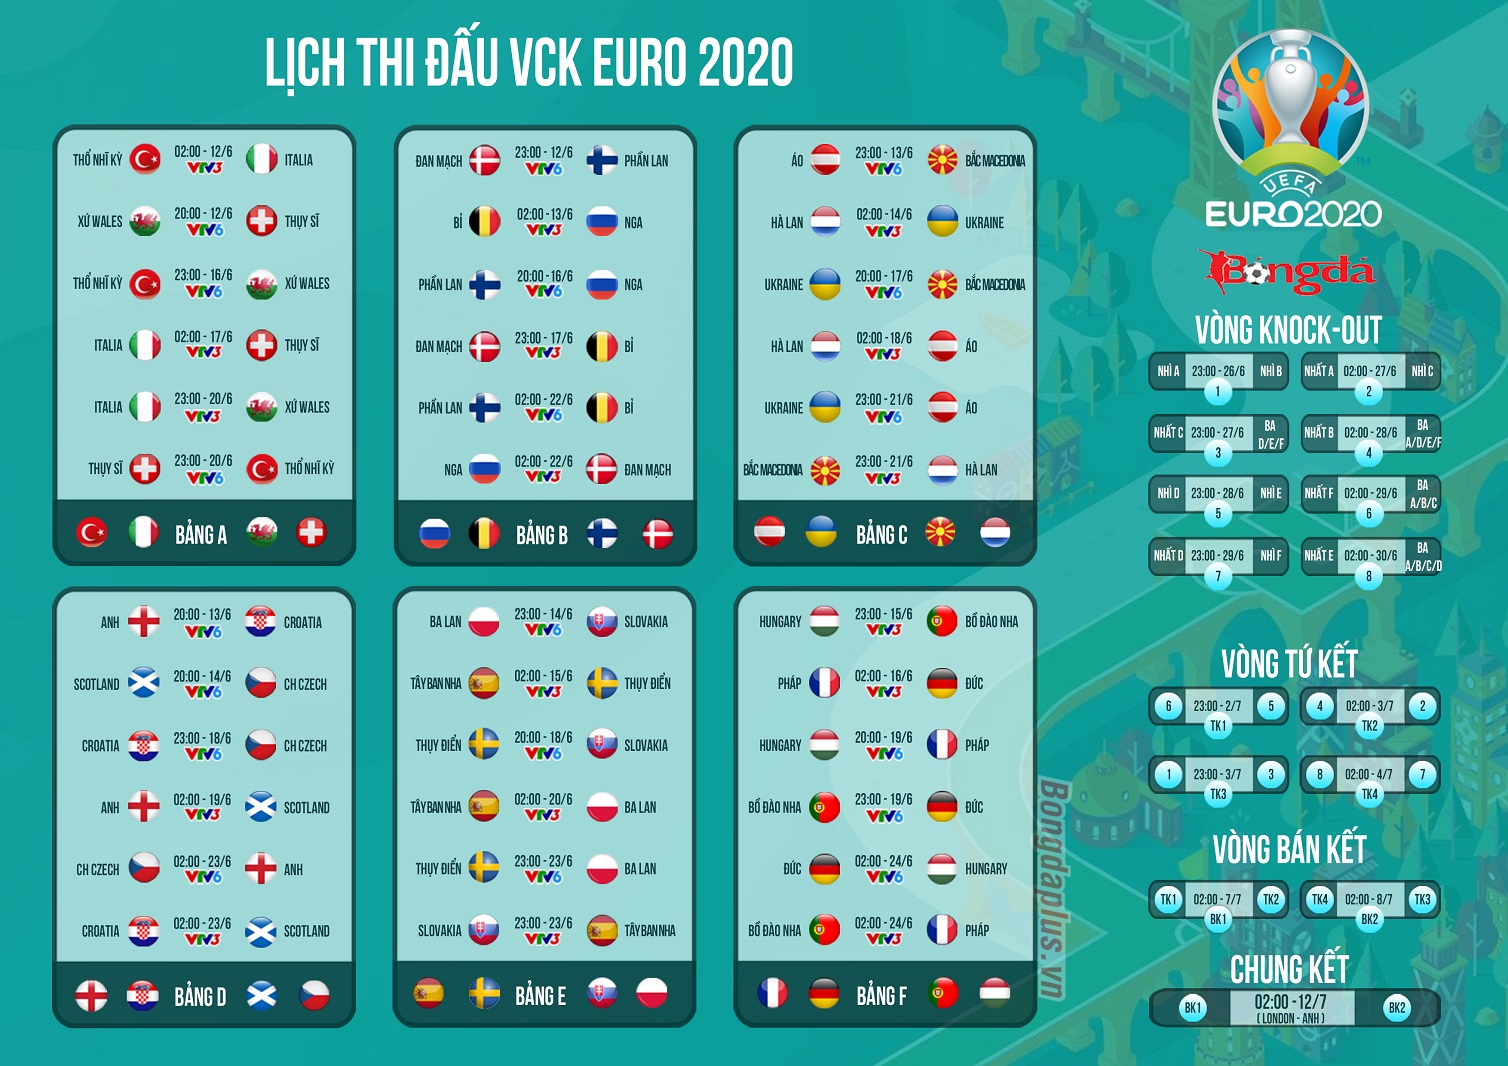 Lịch thi đấu kèm kênh phát sóng các trận đấu mùa giải Euro 2020